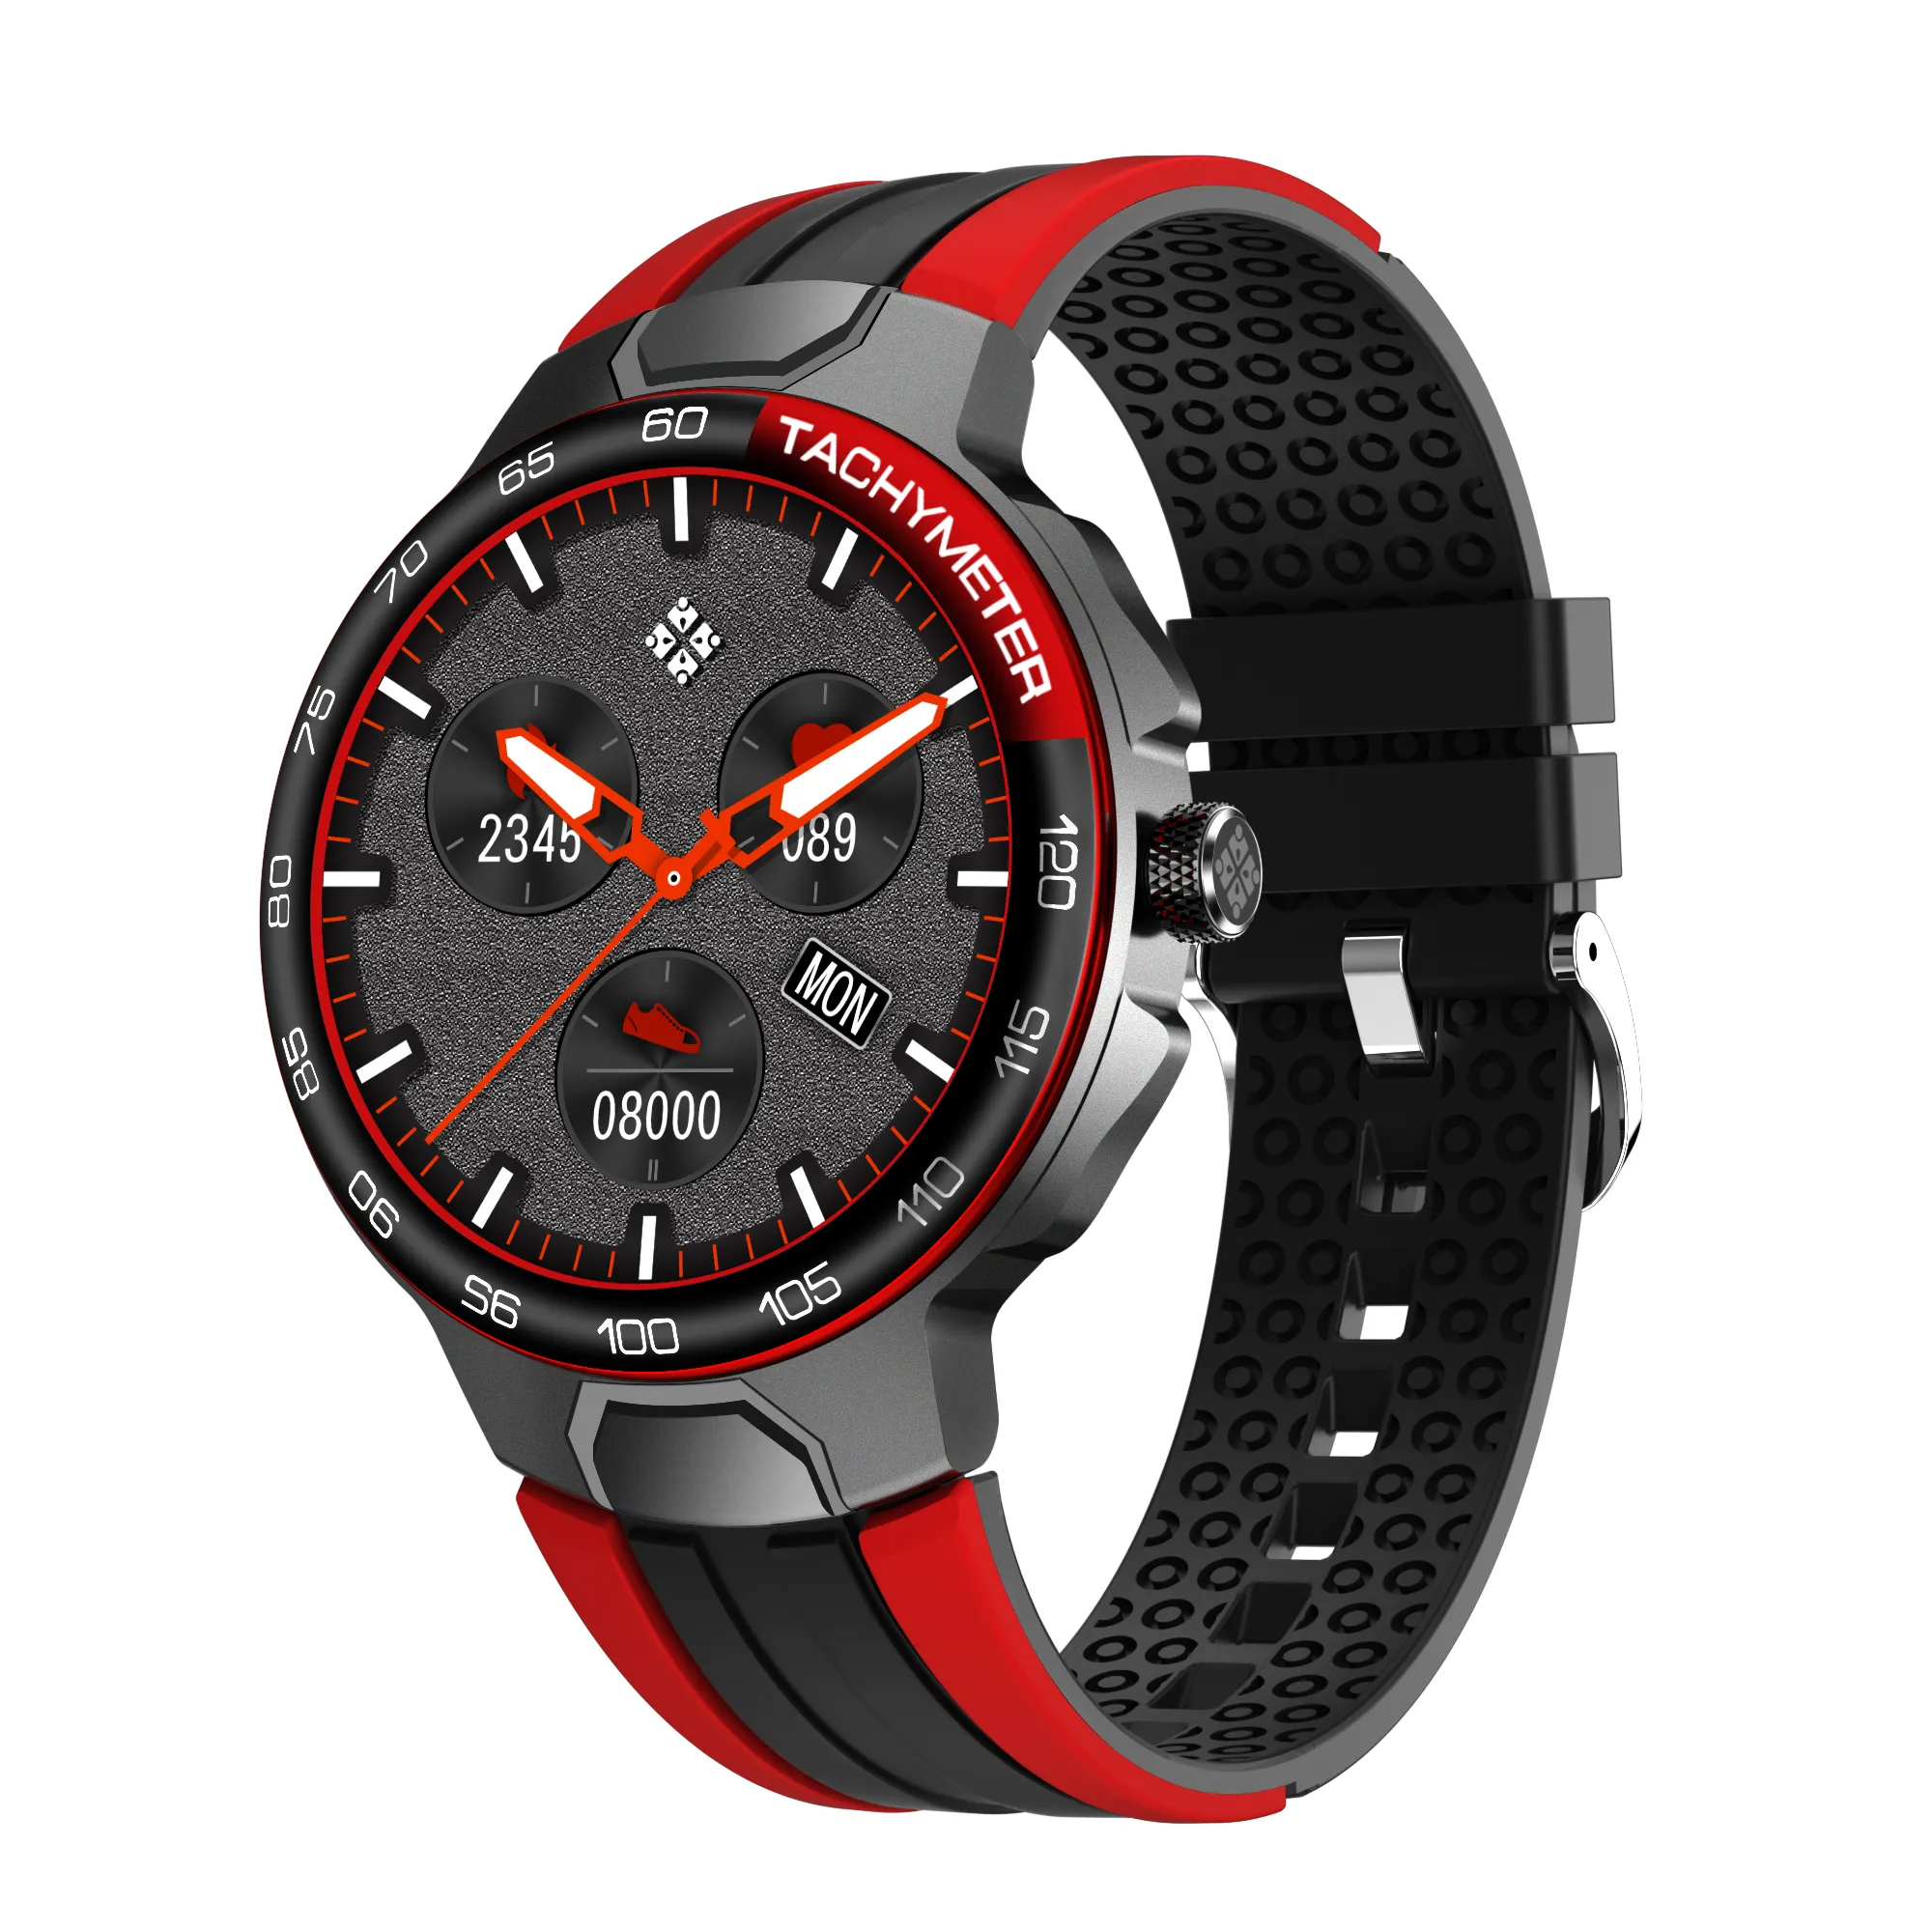 VALDUS nouveauté fabricant montre intelligente de luxe IP68 étanche montre de sport montres intelligentes numériques pour téléphones mobiles